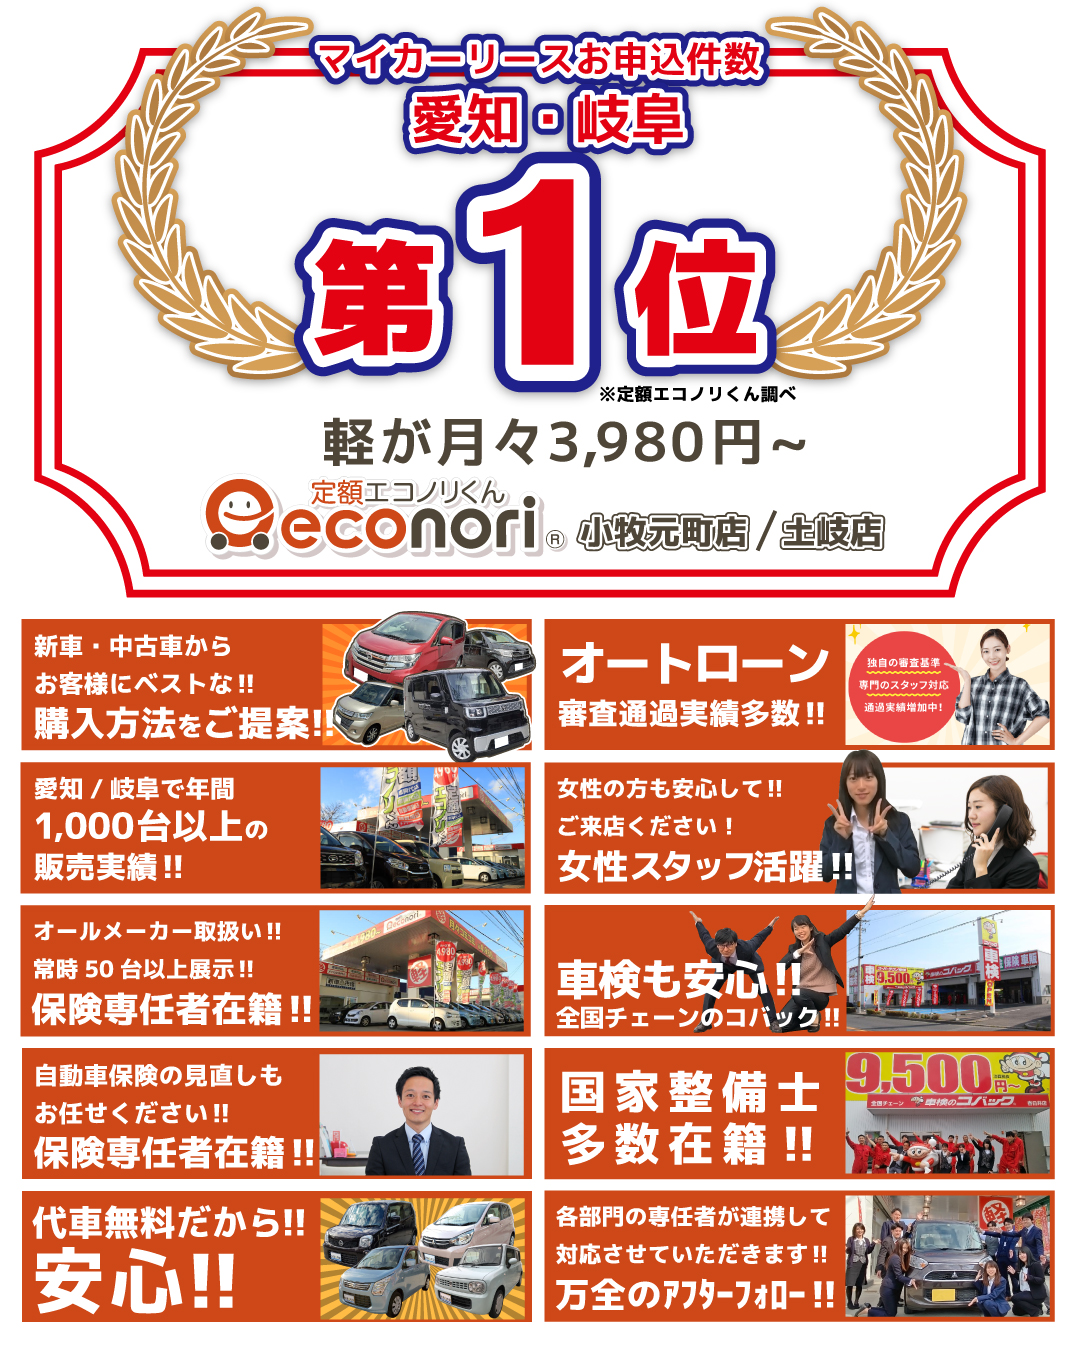 愛知 小牧で中古車買うなら 定額エコノリくん 月々4 980円の中古車リースという買い方